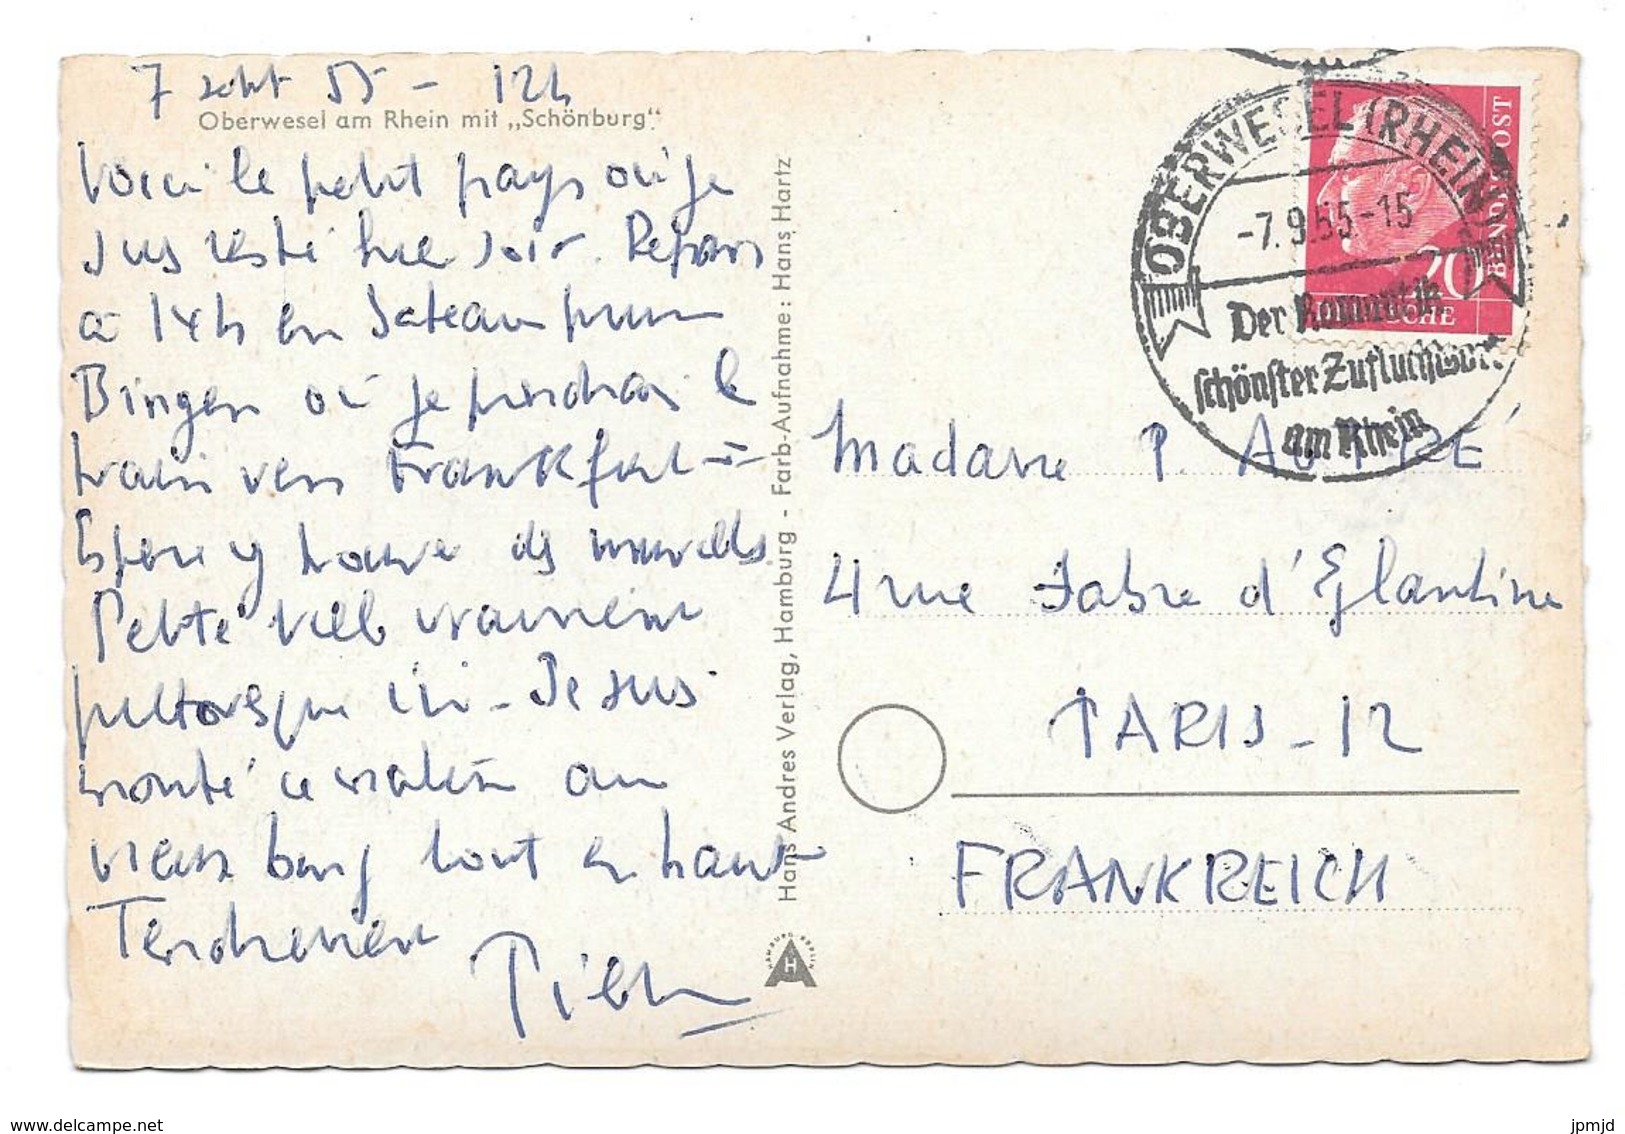 Oberwesel Am Rhein Mit Schönburg - Hans Andres Verlag - 1955 - Oberwesel